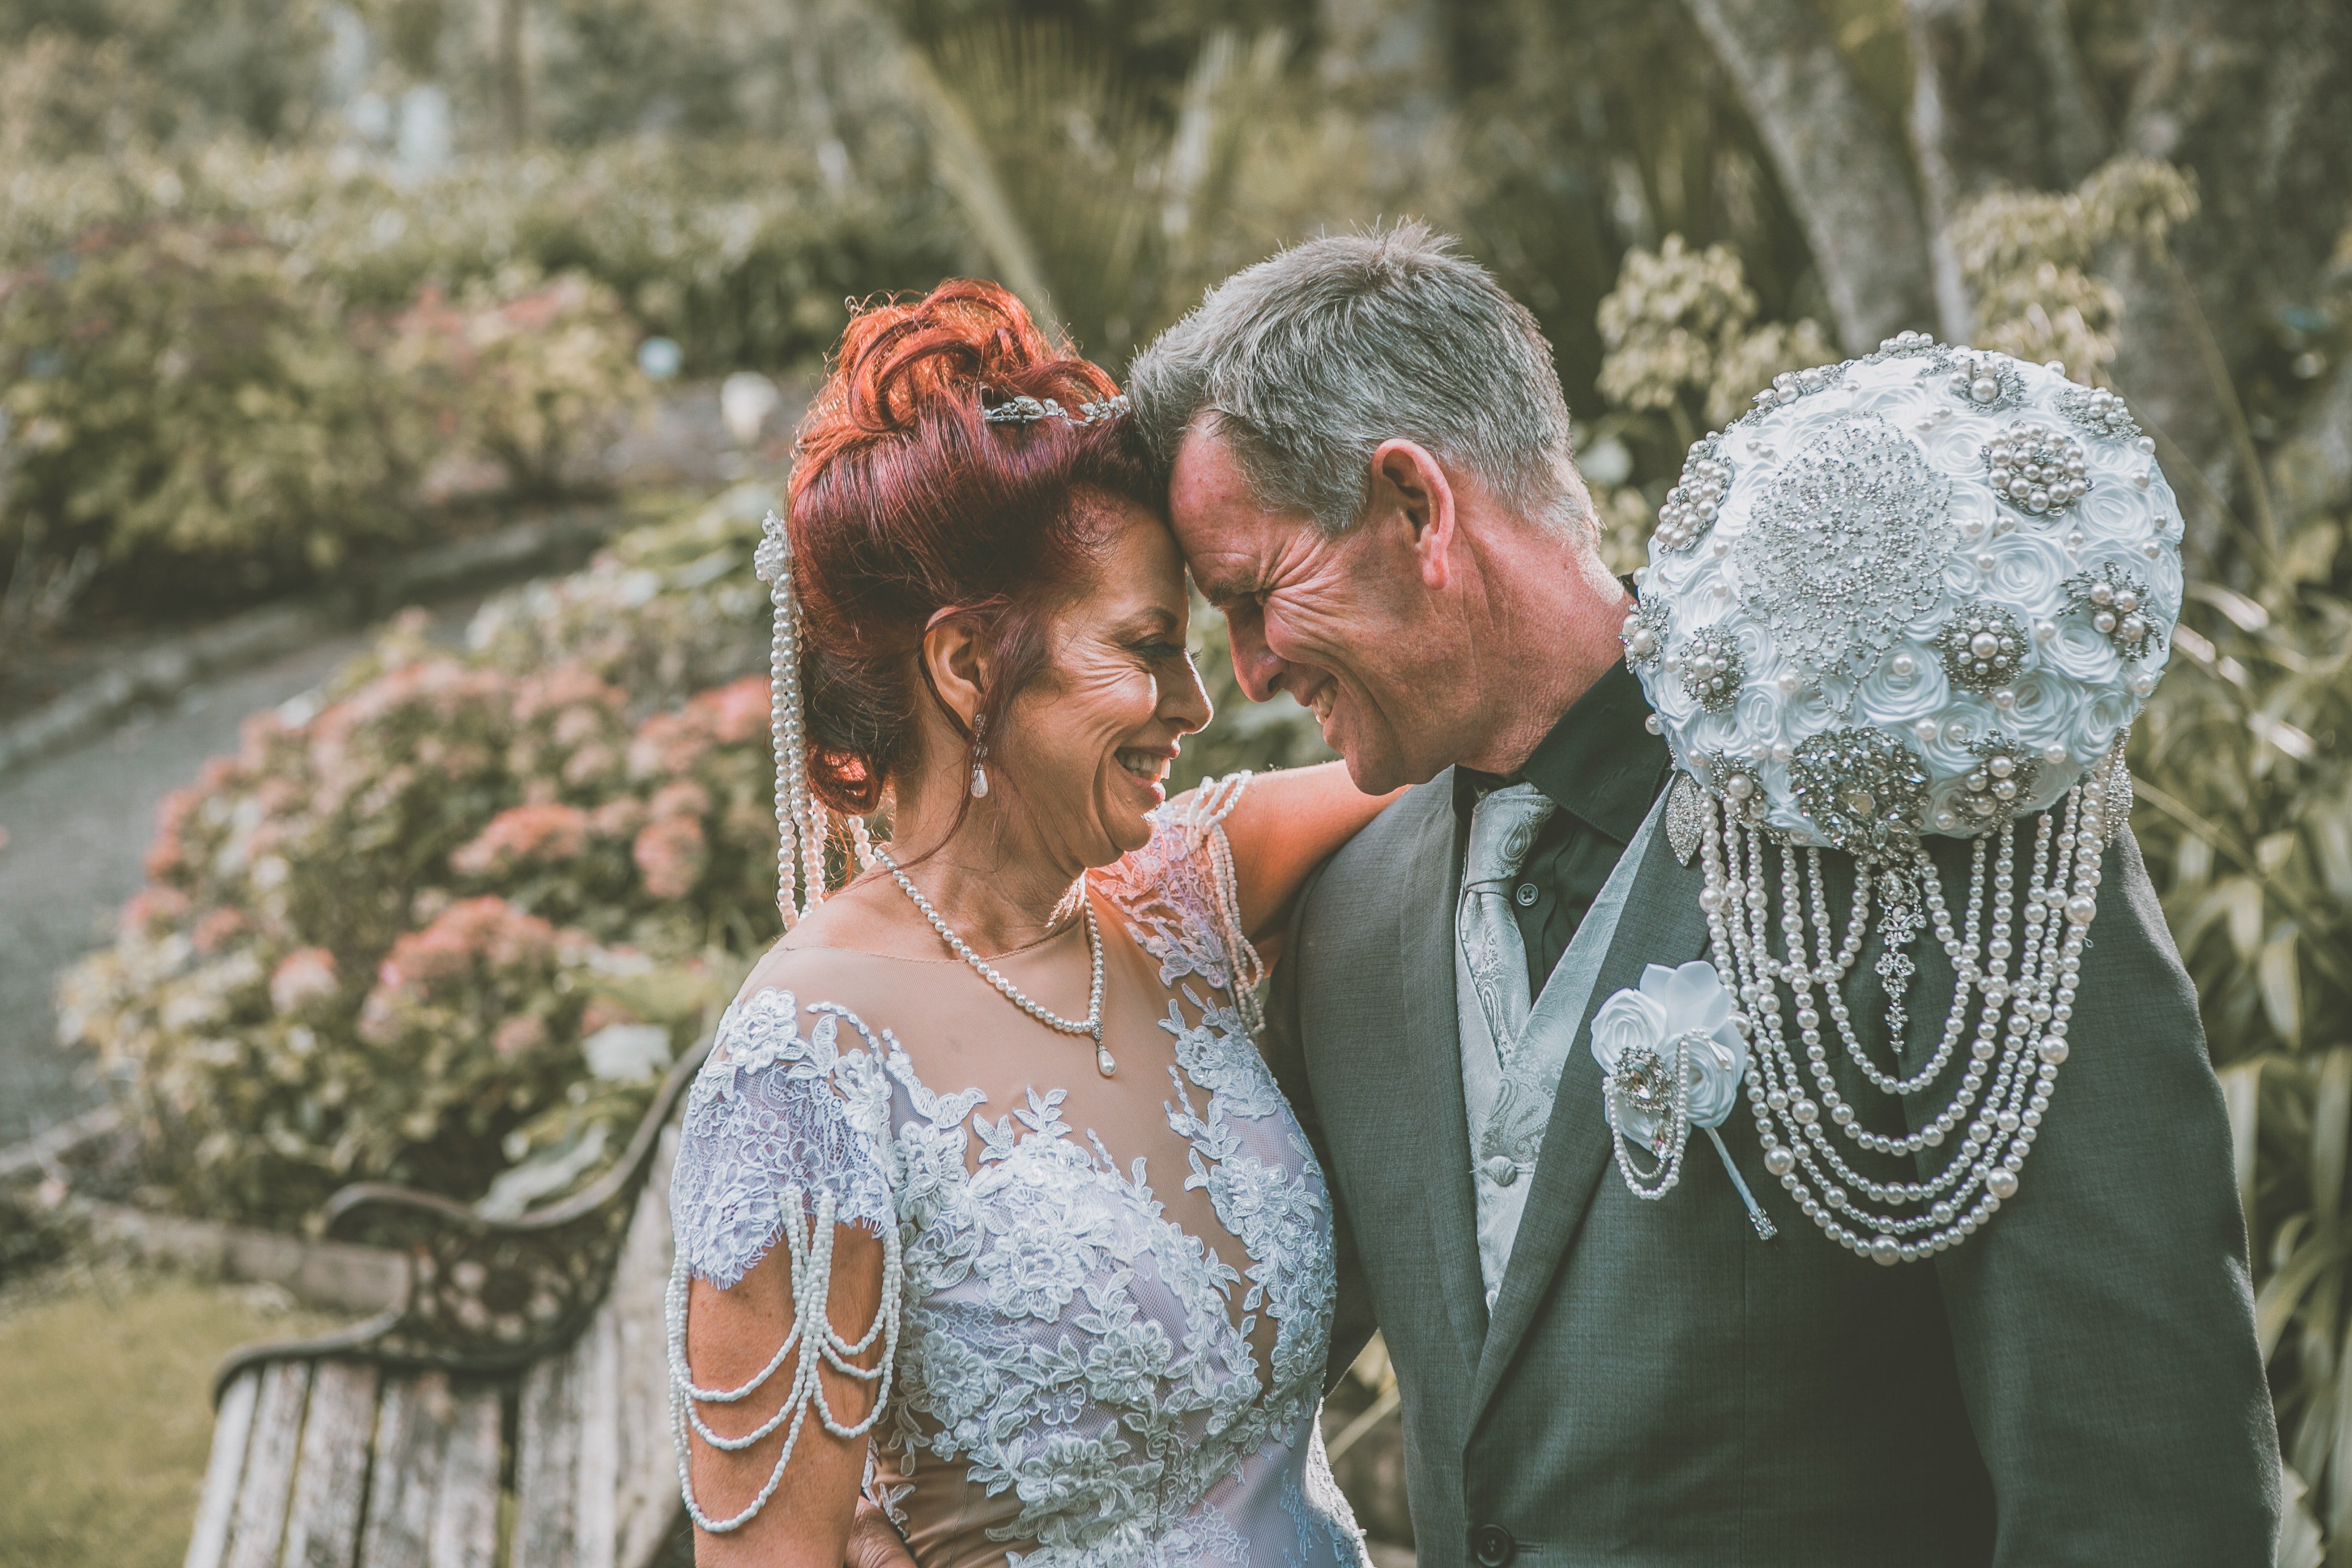 Sandra und Johnny heirateten und lebten ein glückliches Leben. | Quelle: Pexels